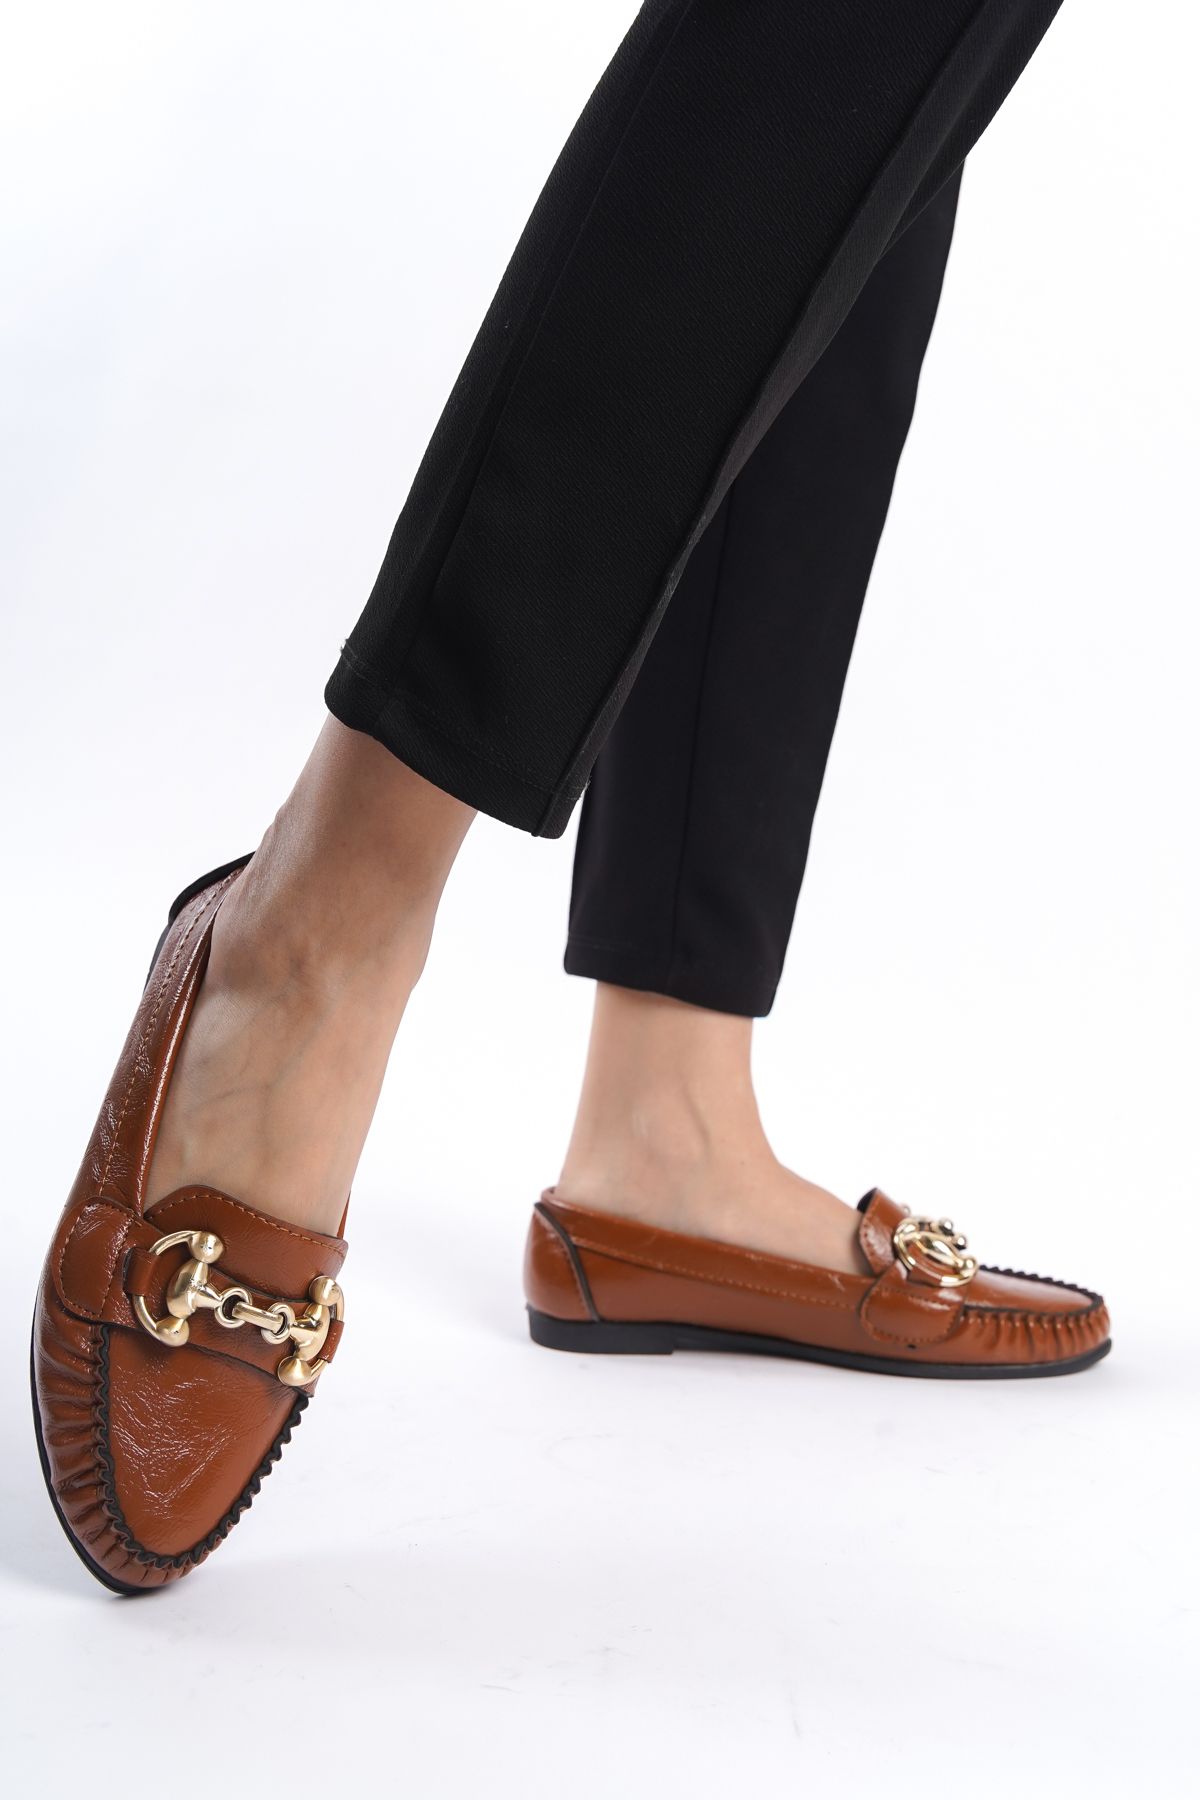 eformoda by emre yılmaz Kahverengi Kadın Günlük Rahat Tokalı Casual Klasik Ayakkabı Babet LRS03